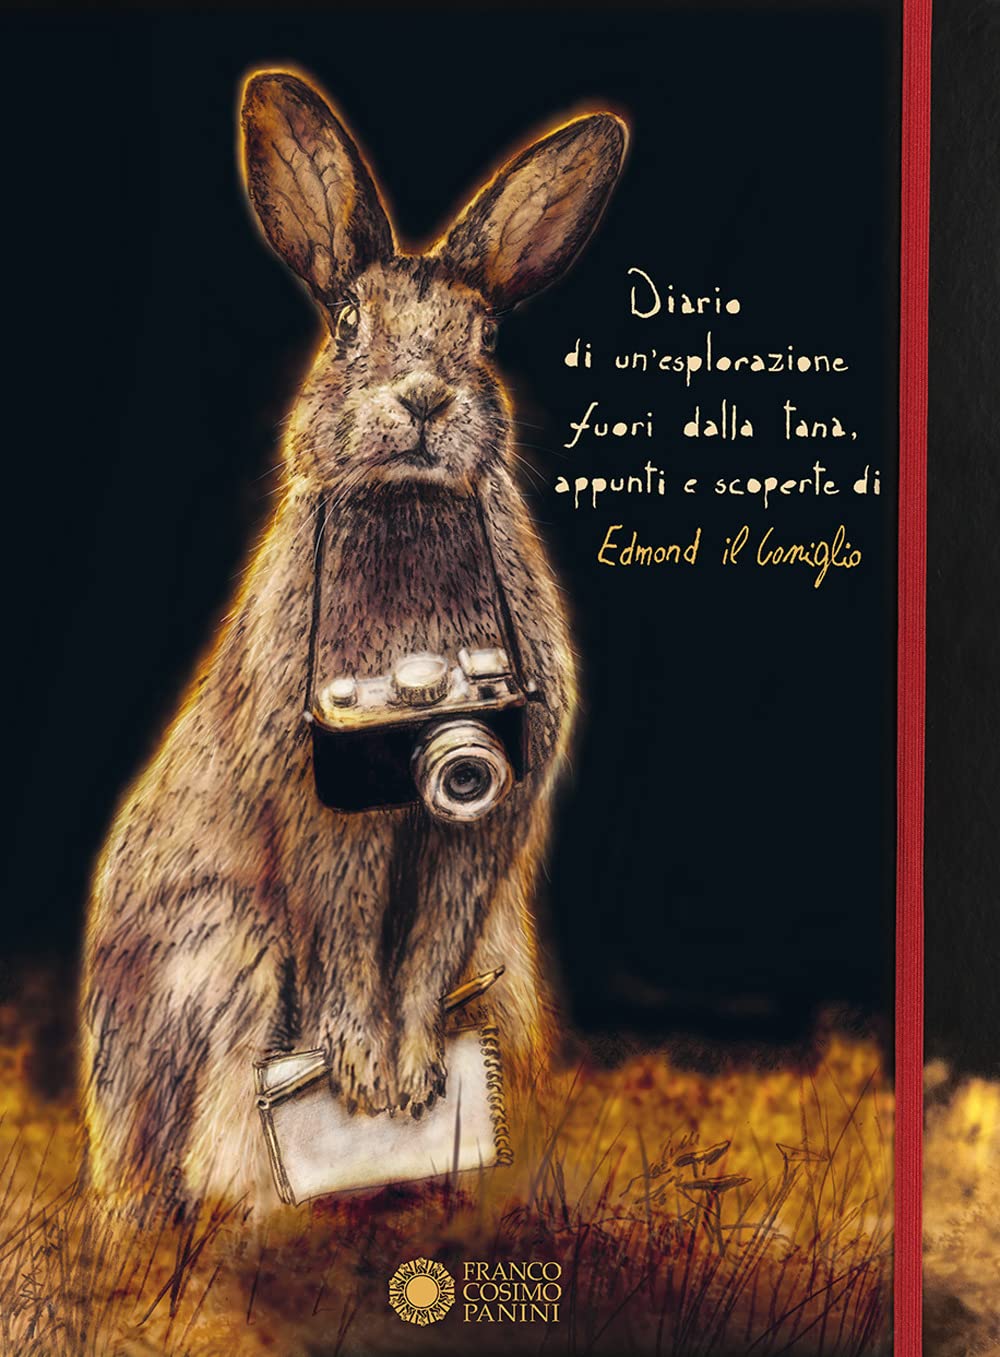 Diario di un’esplorazione fuori dalla tana, appunti e scoperte di Edmond il Coniglio